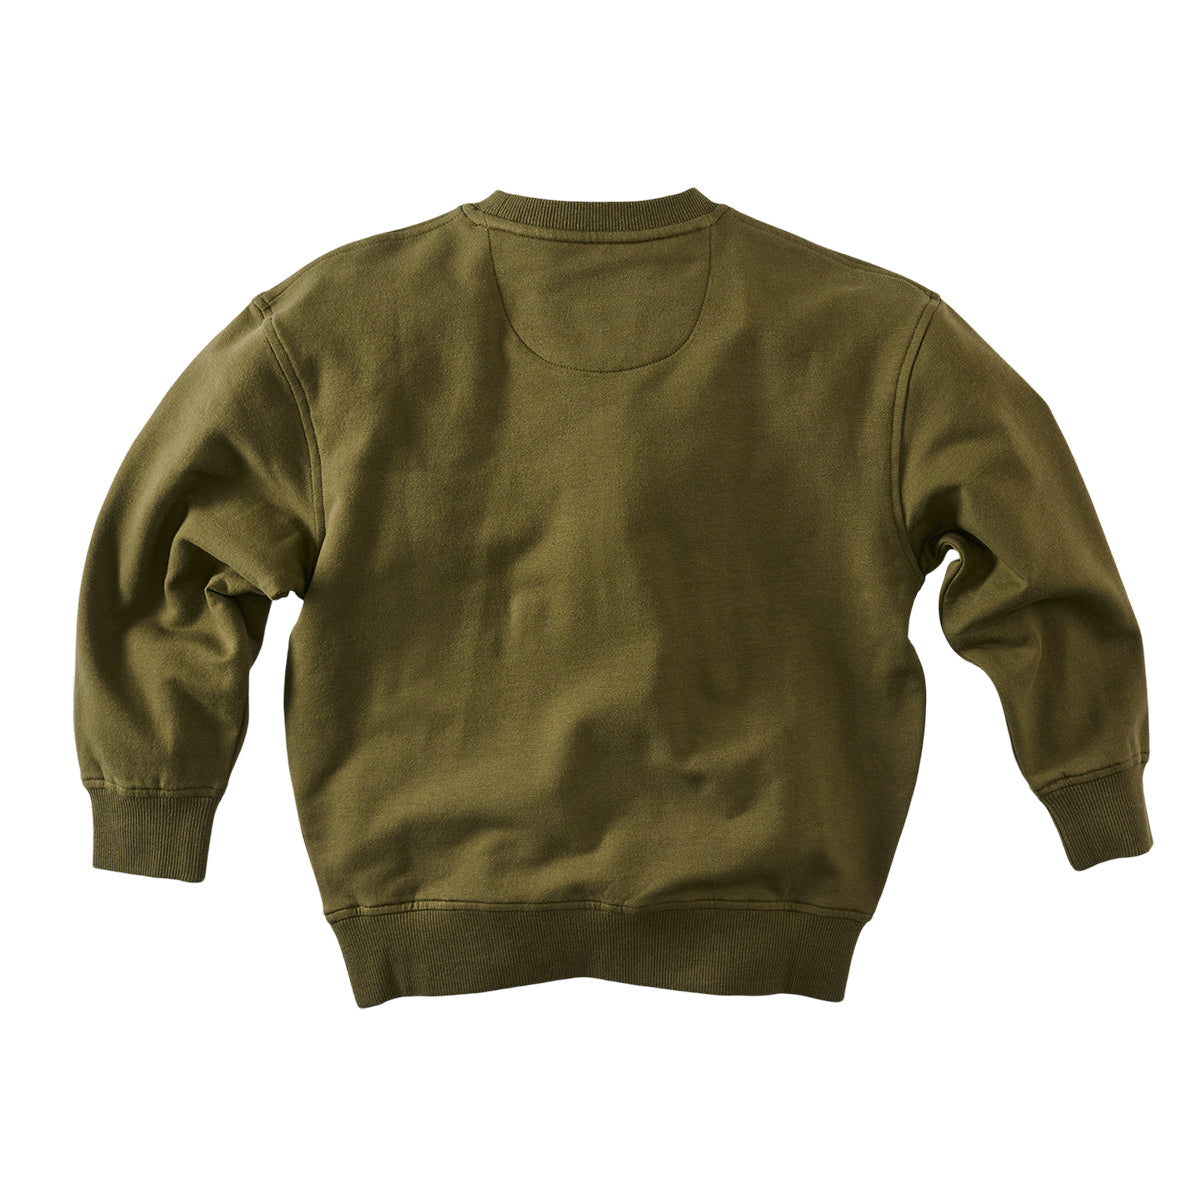 Jongens Sweater Elmer van Z8 in de kleur Dark olive in maat 140-146.